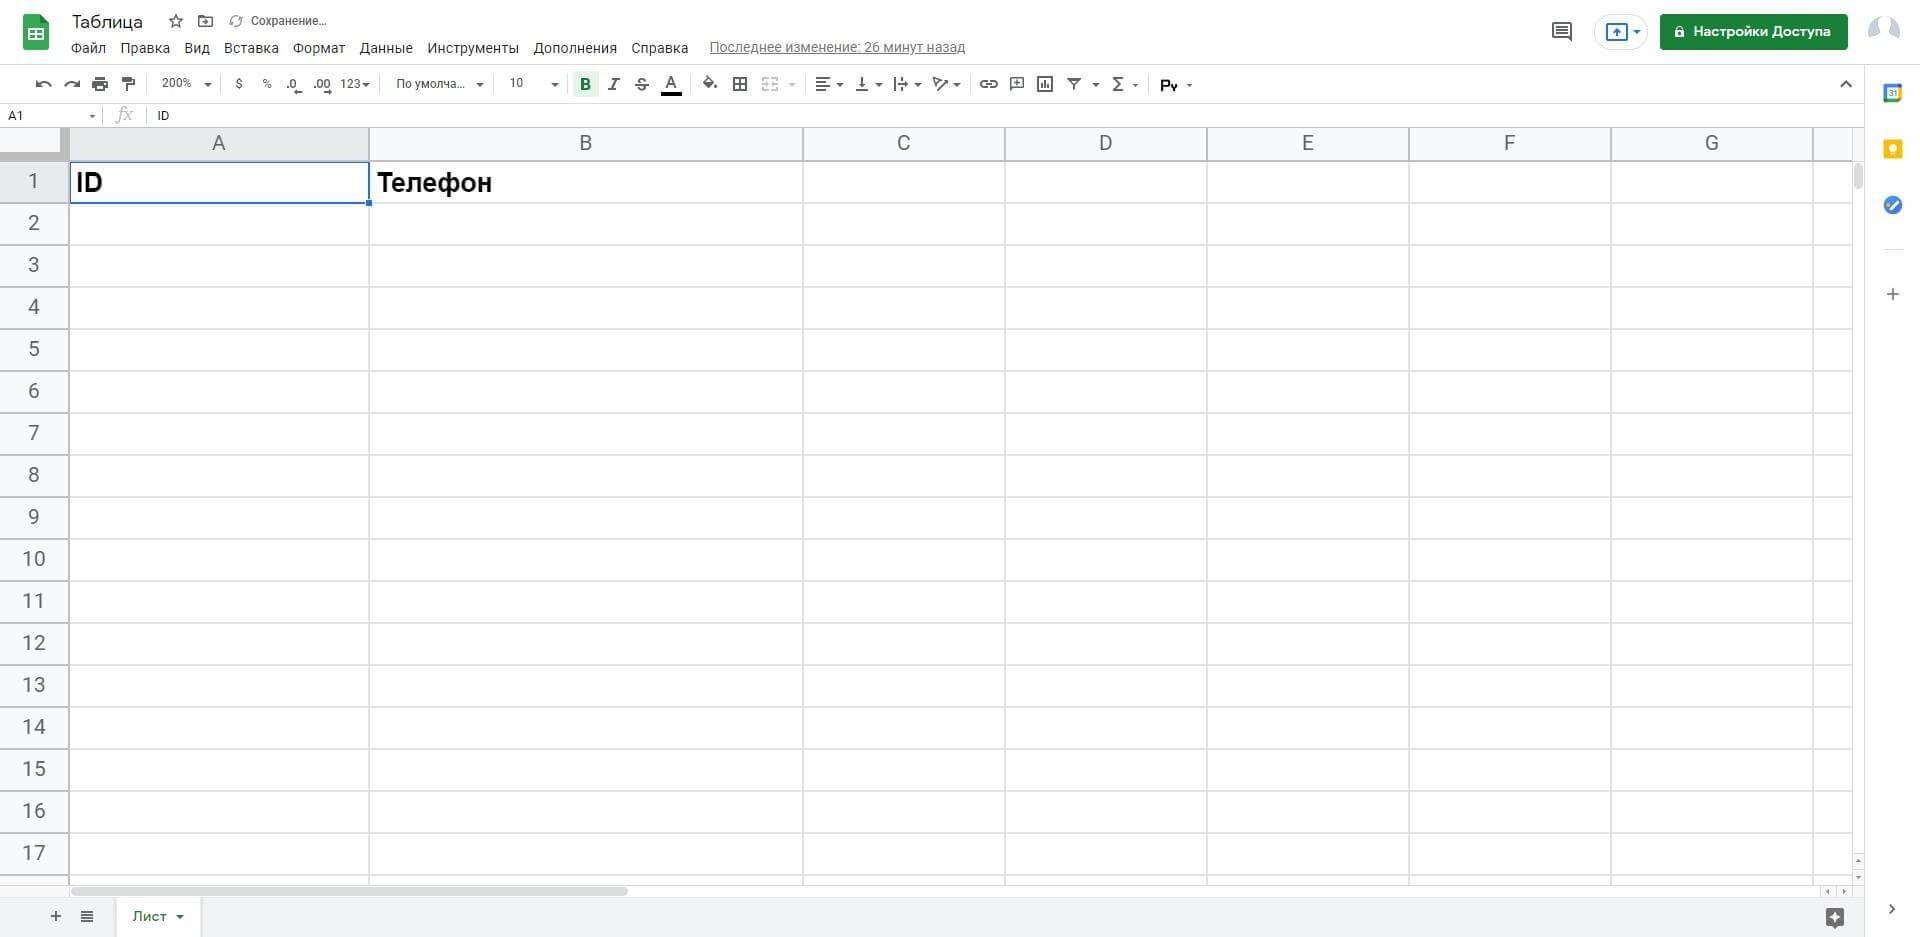 Открываем в новой вкладке Google Sheets и создаем таблицу и лист, в которые коннектор будет выгружать номера. Для удобства колонки можно подписать.